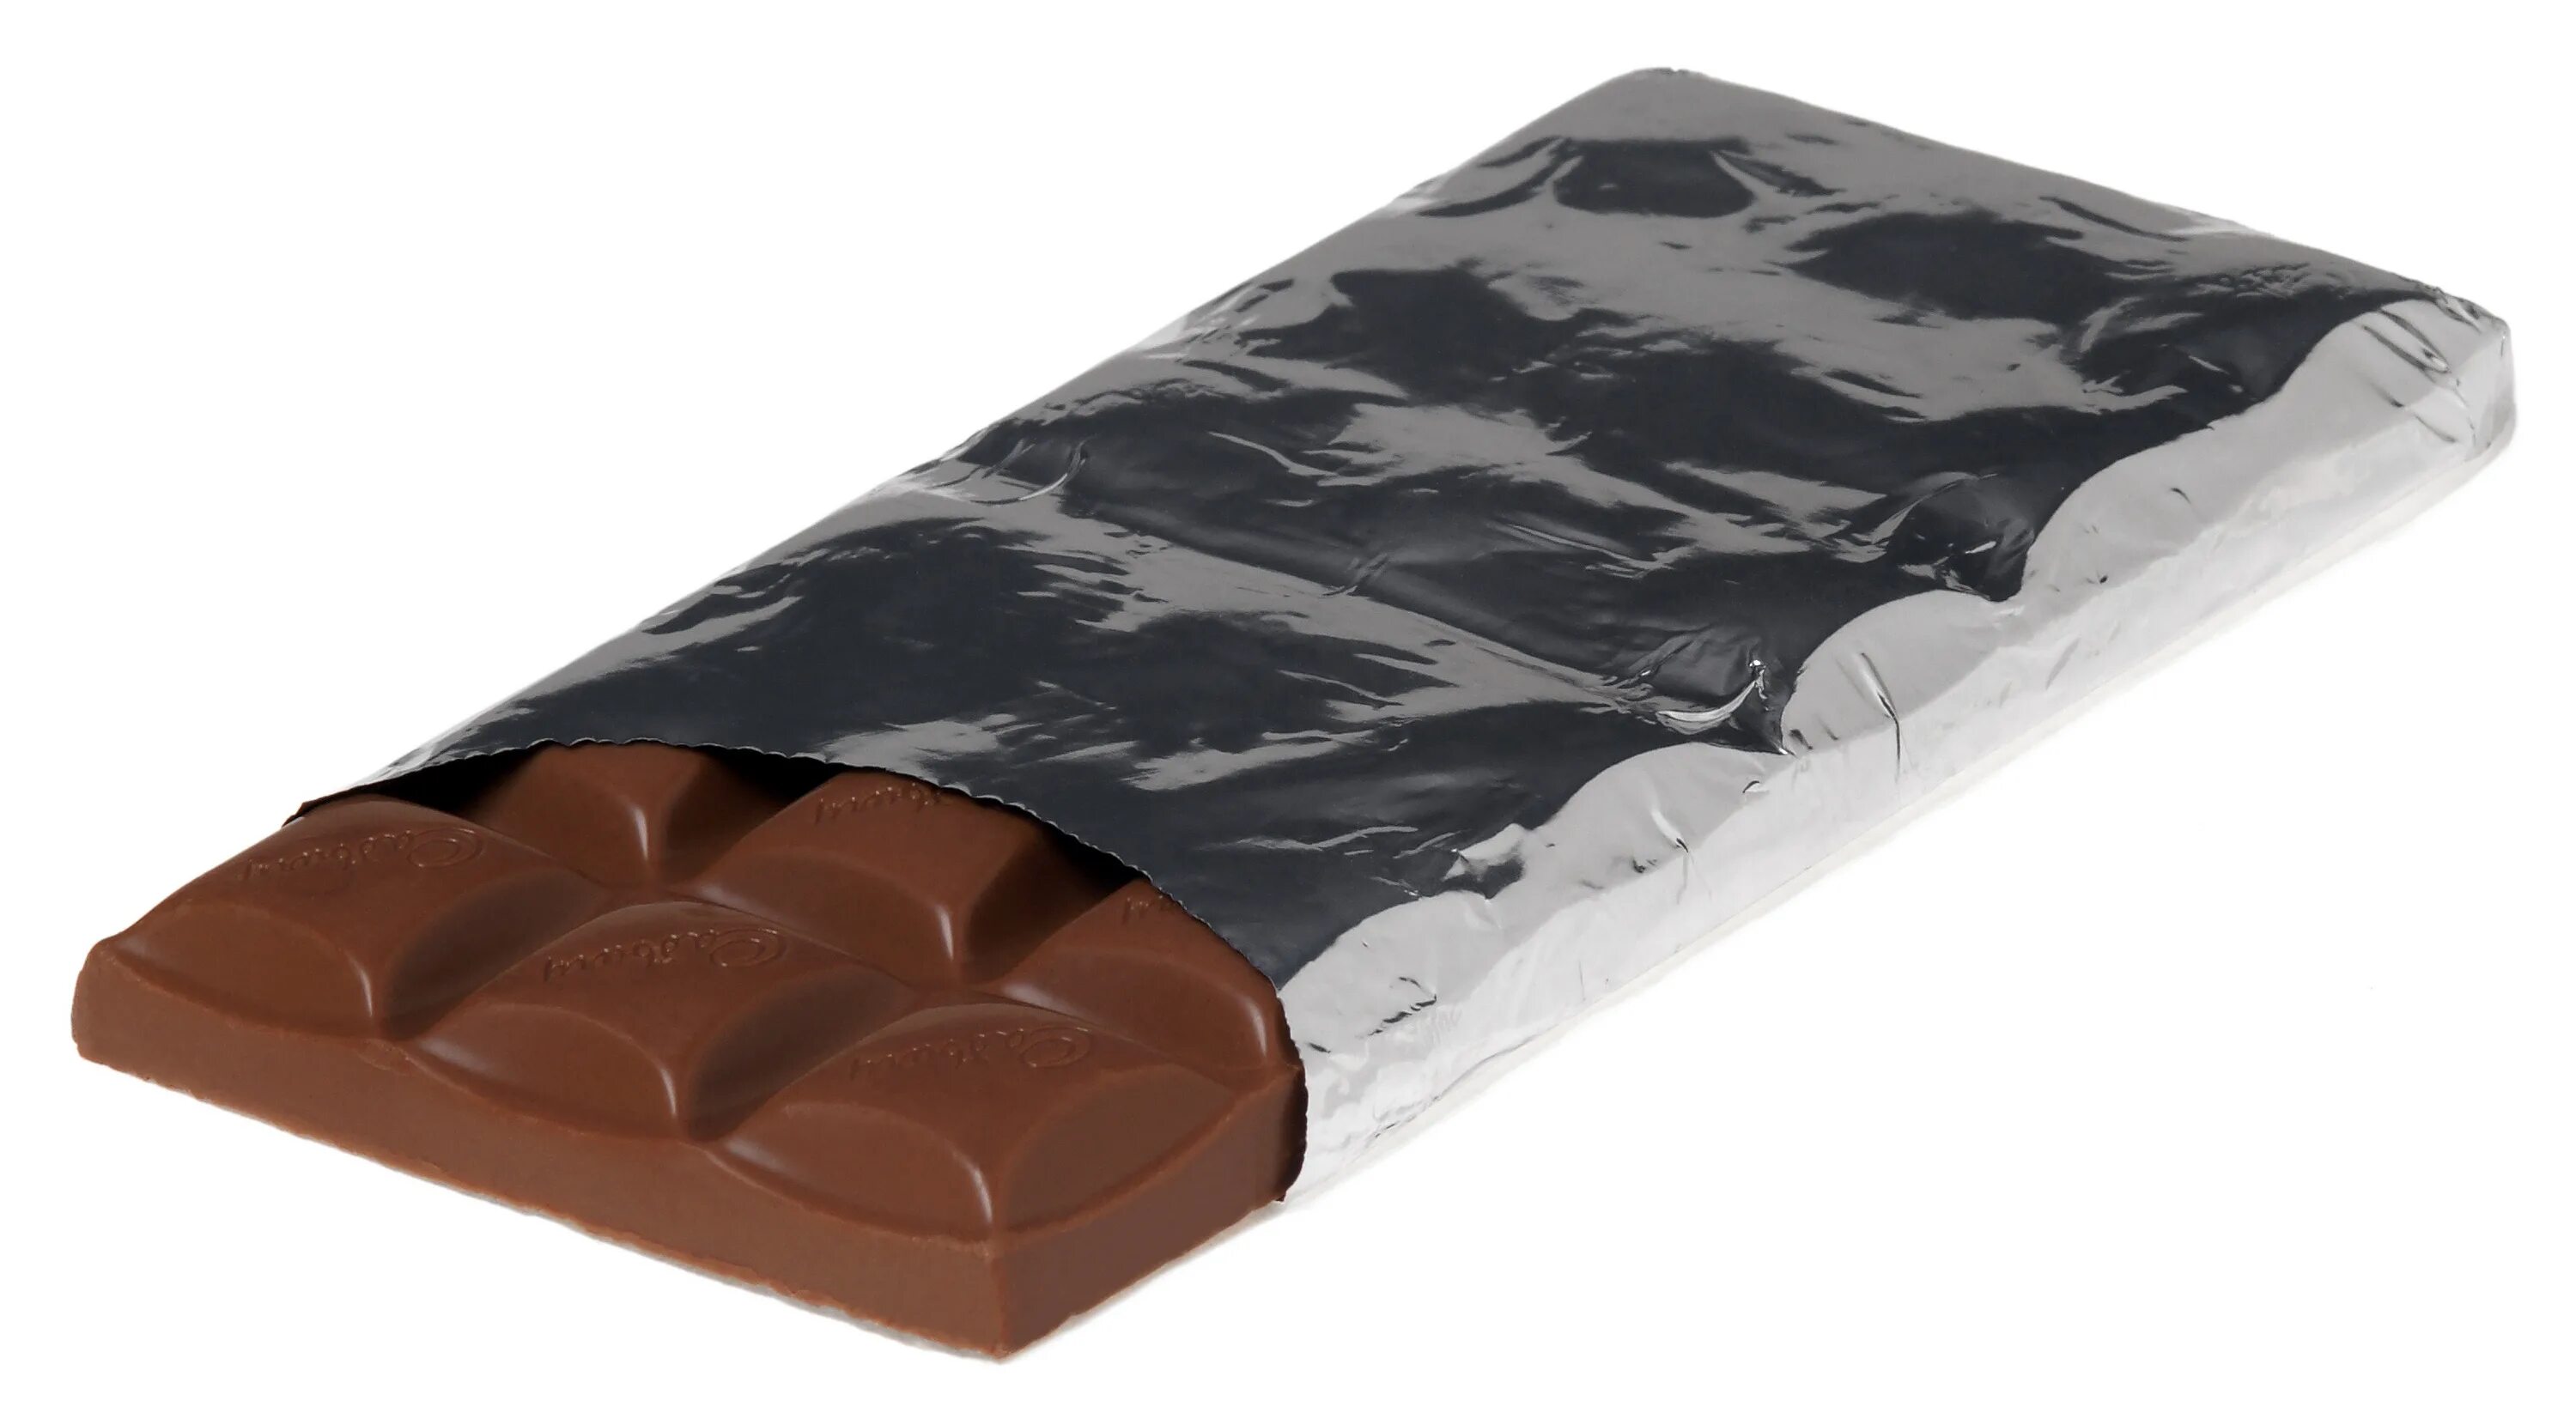 Bar of chocolate. Chocolate Bar. A Bar of Chocolate картинка. Очковые конфеты. Файл jpg шоколад.